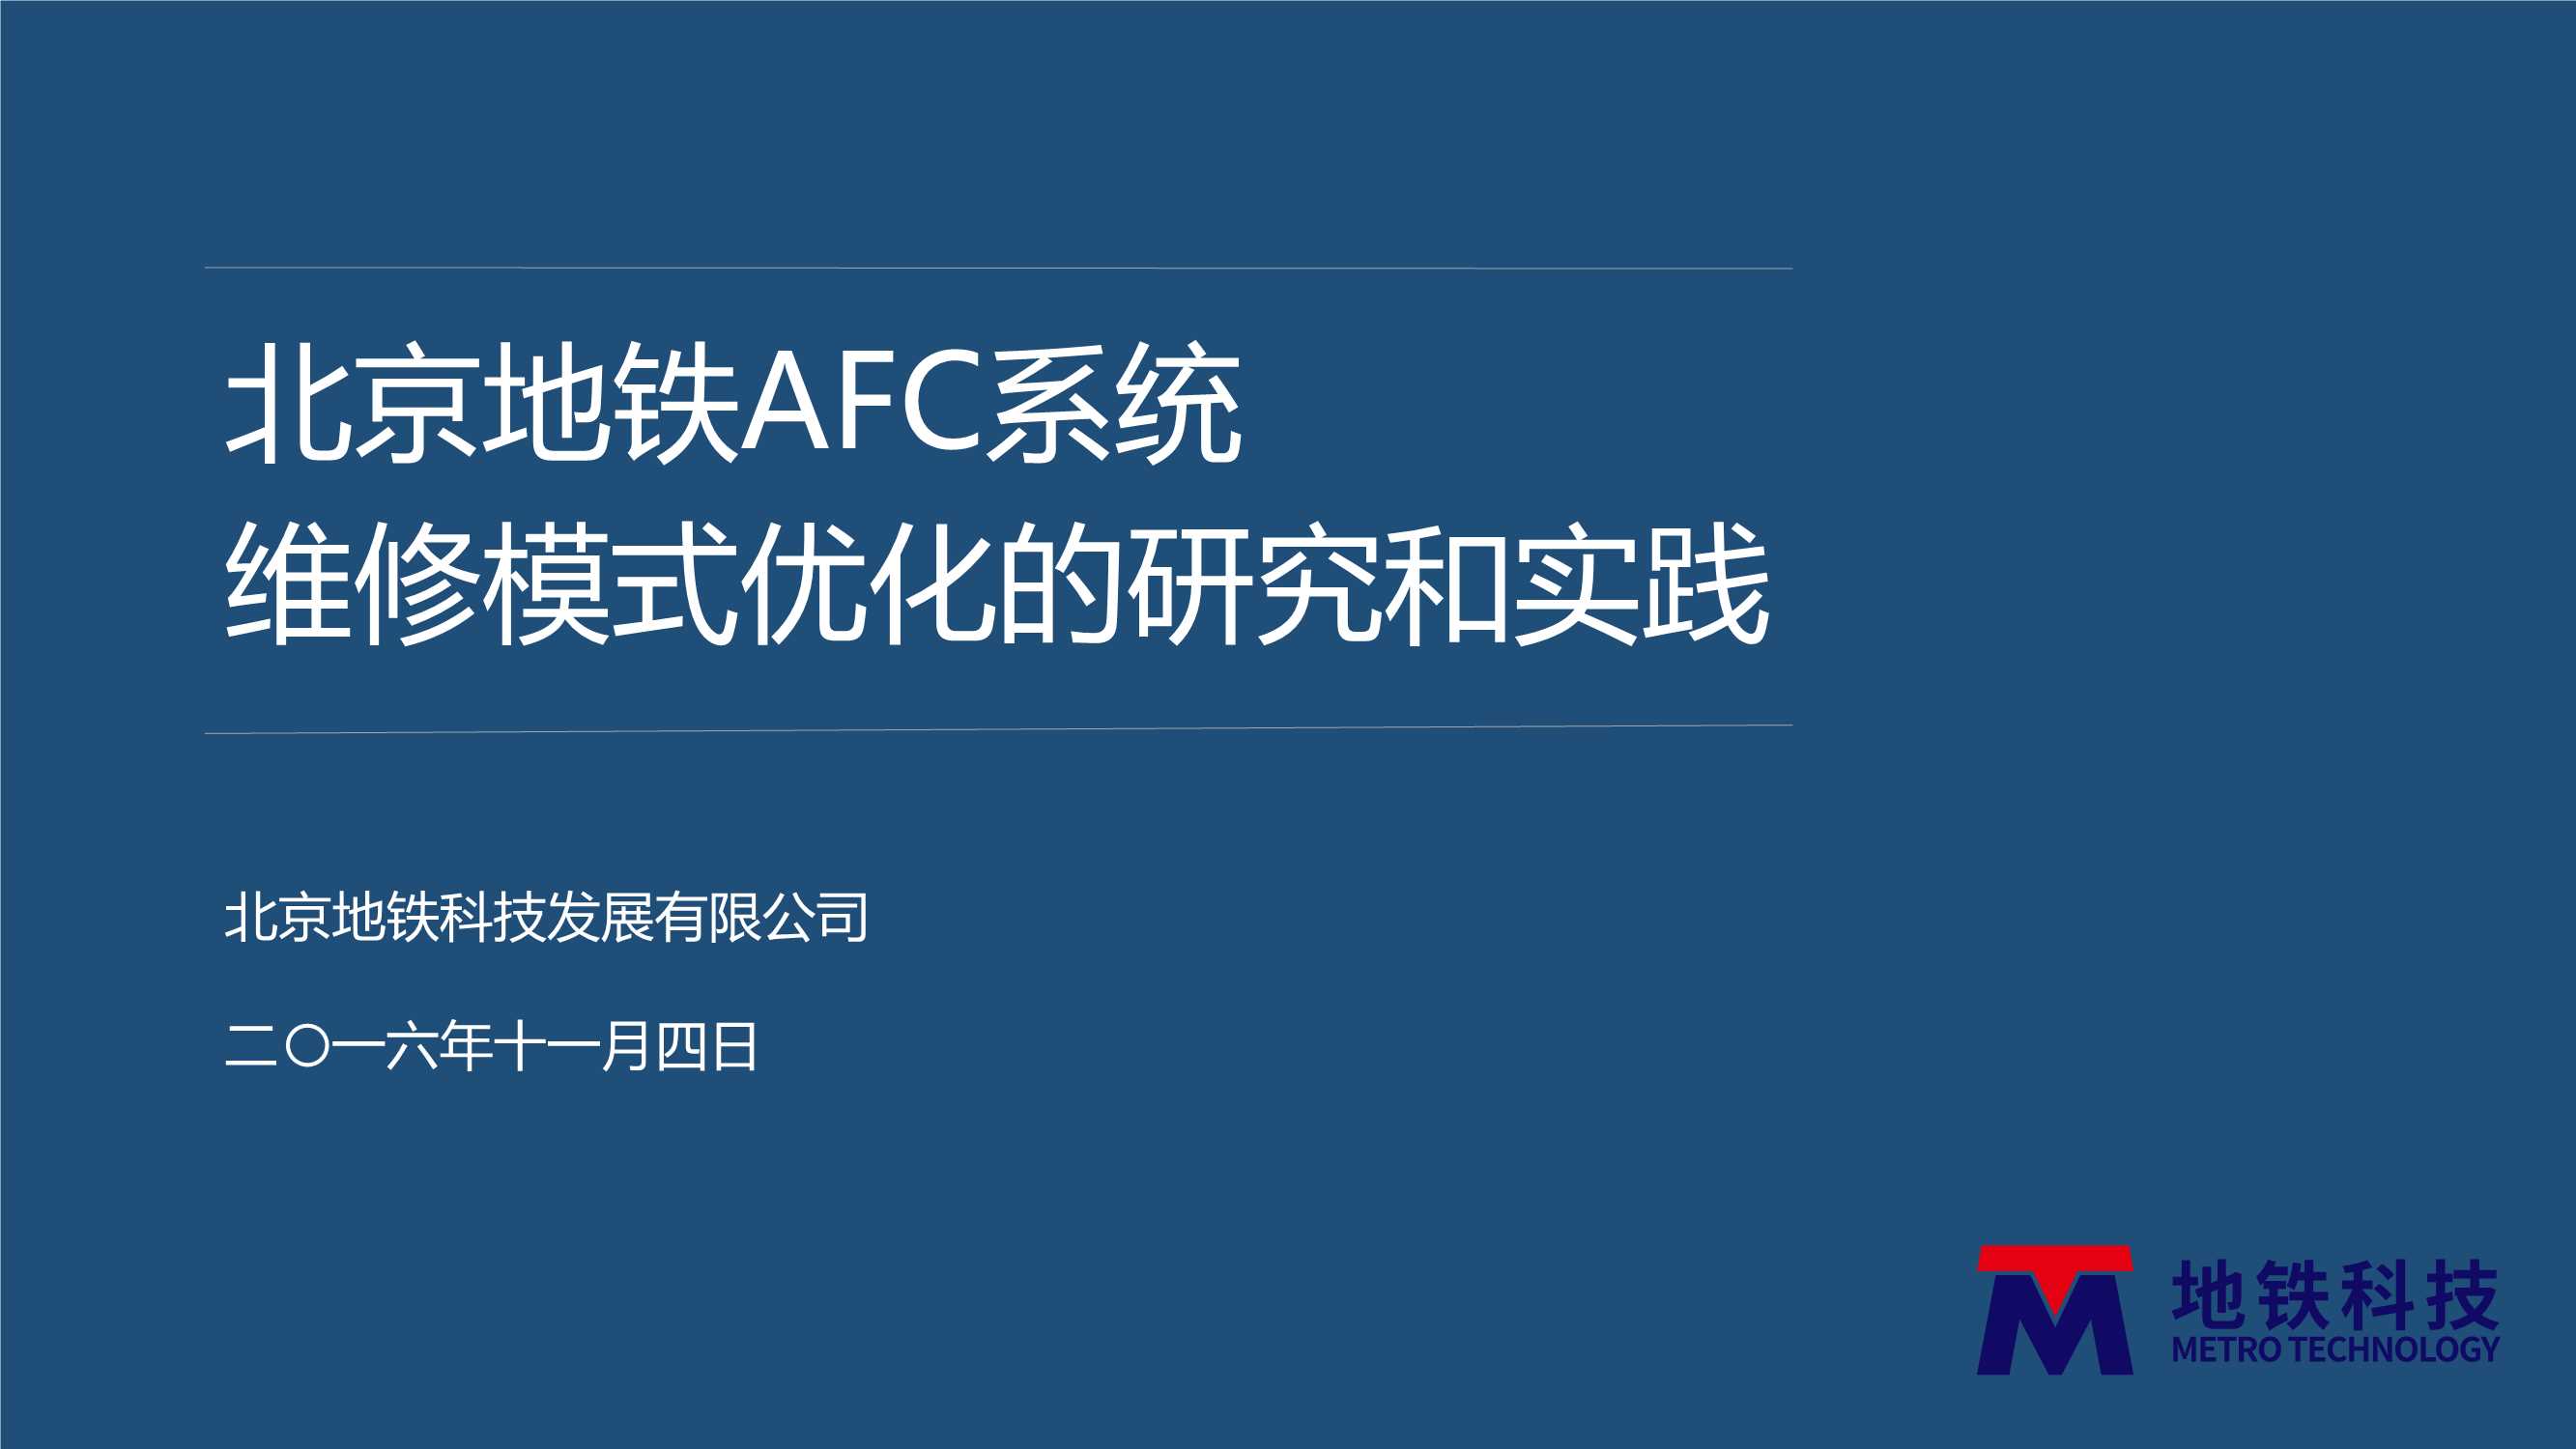 李宇轩-地铁AFC系统维修模式优化的研究和实践（北京地铁）-2016.11-33页